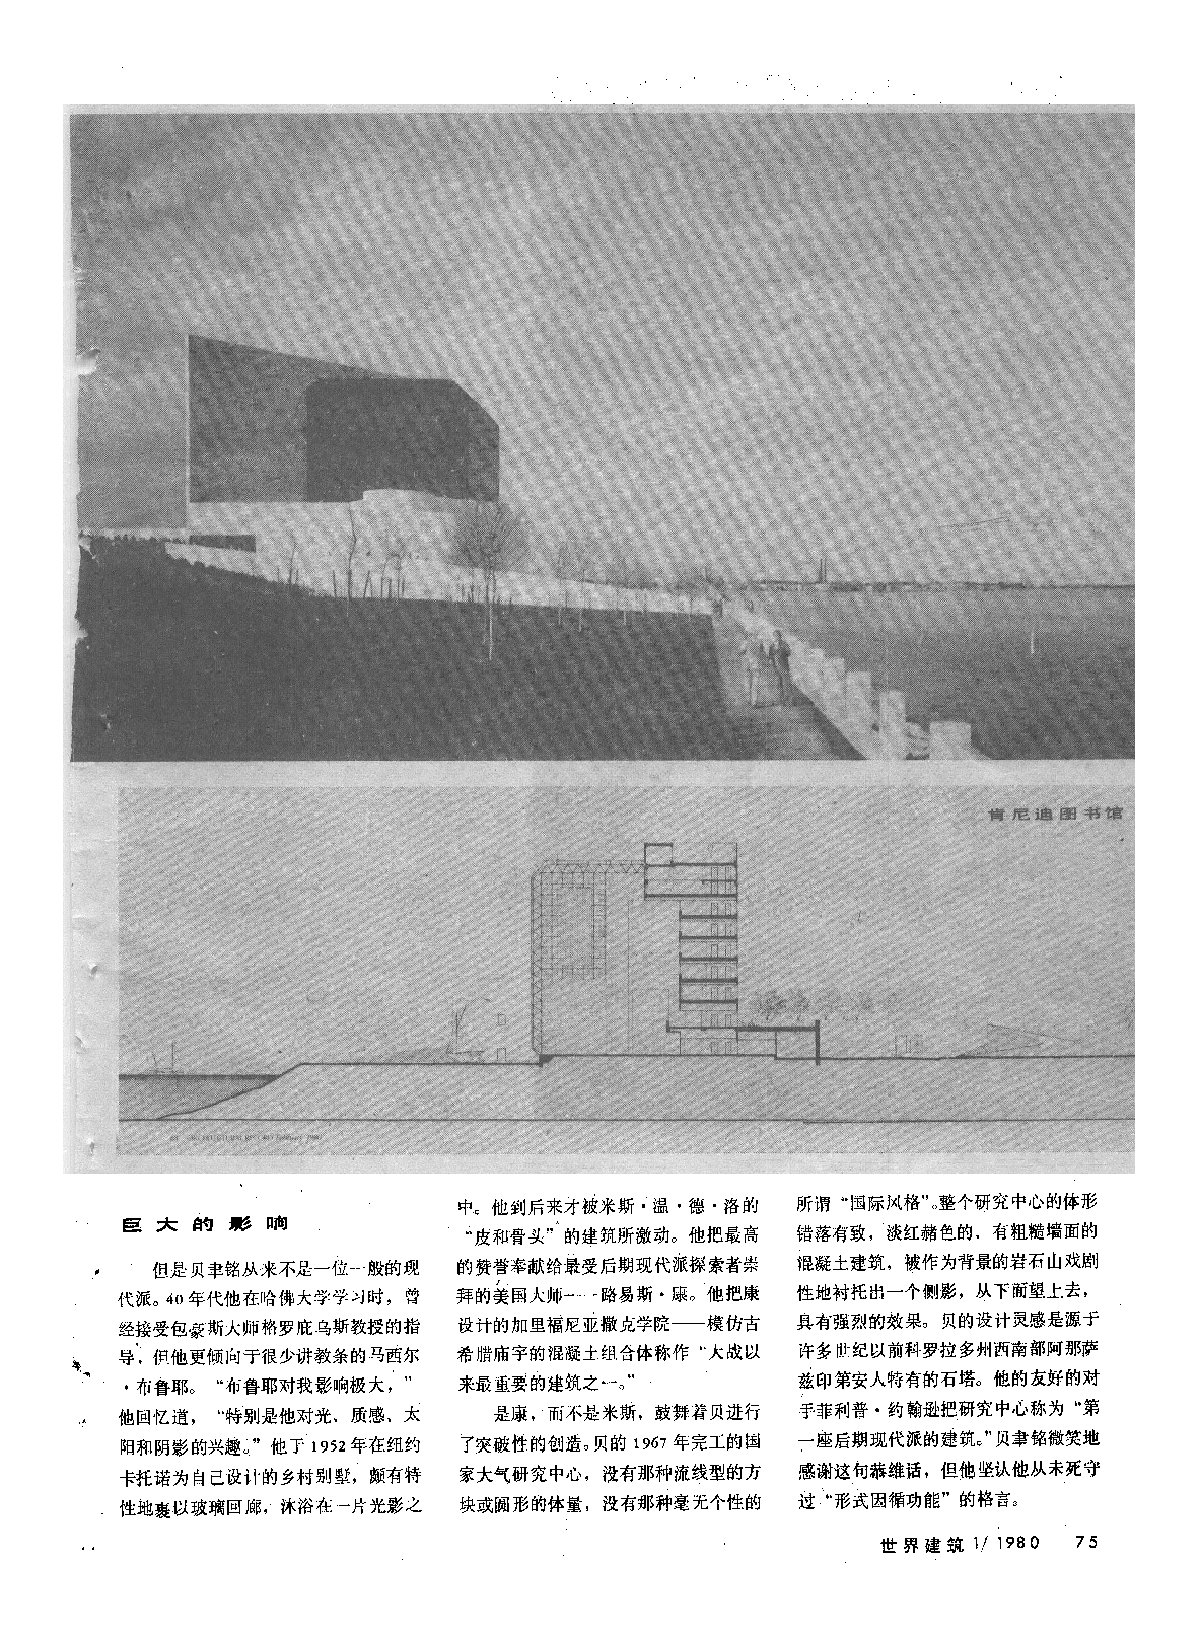 贝聿铭与现代派建筑设计随笔-图二